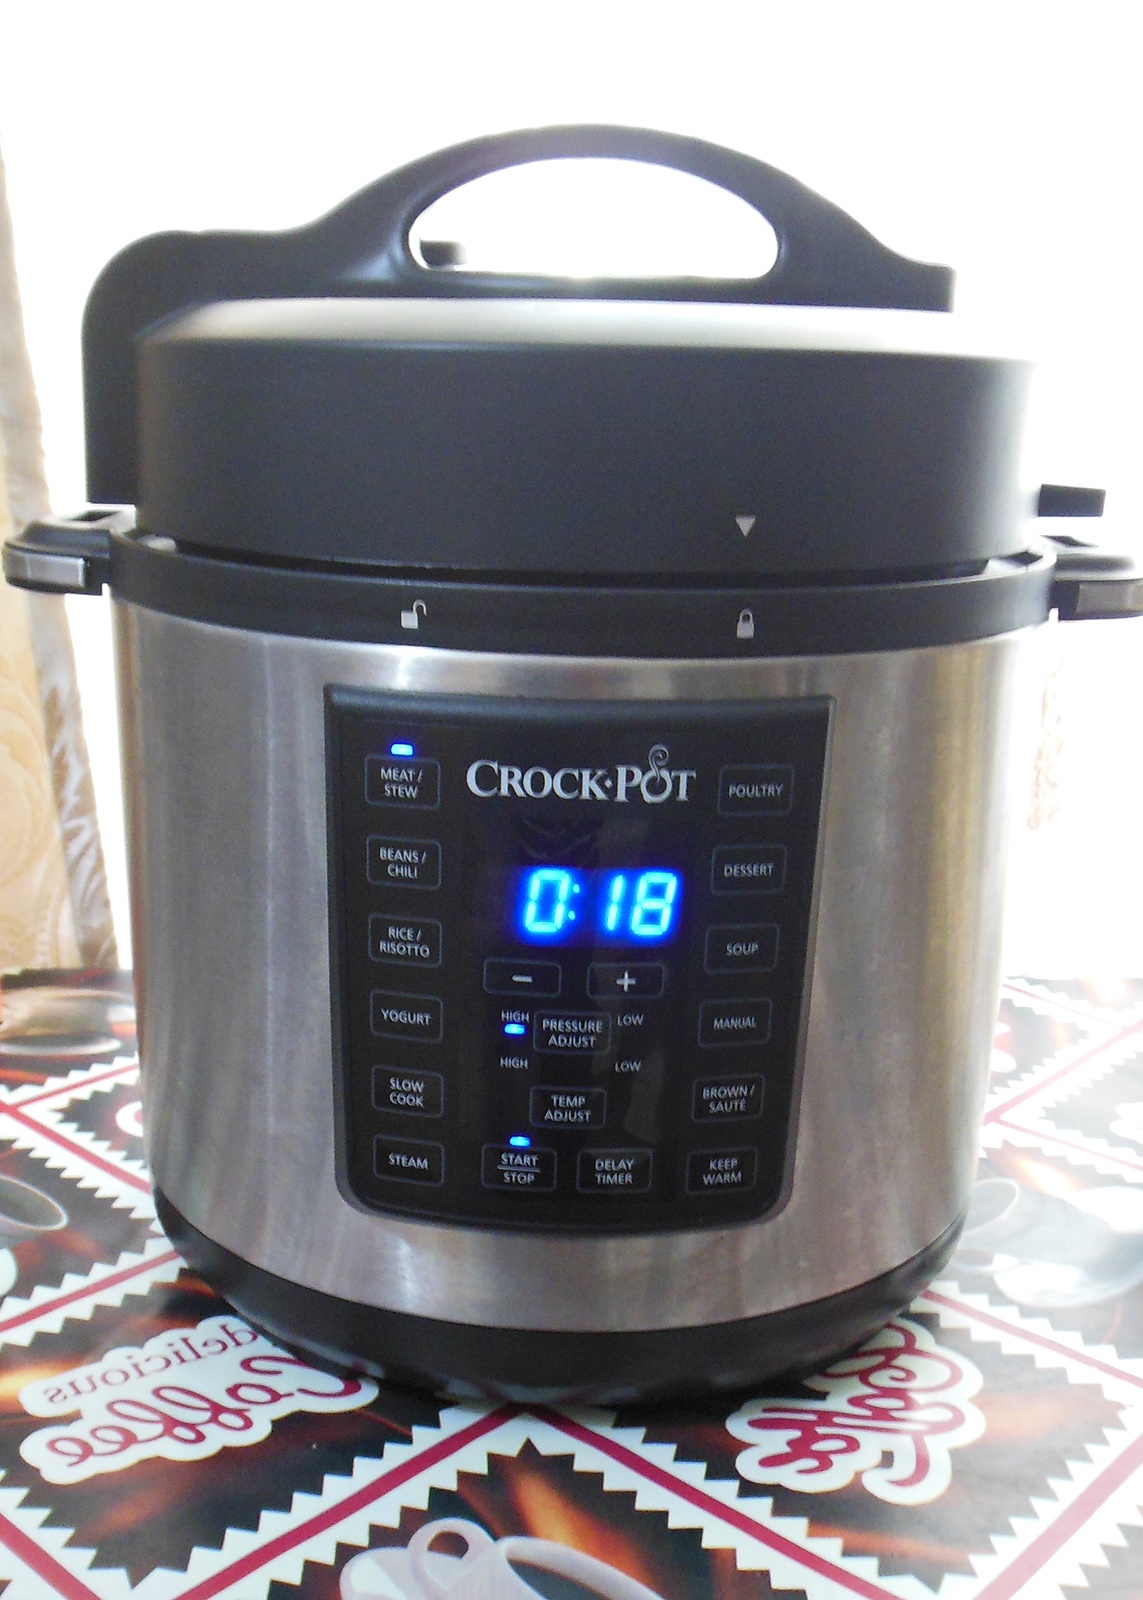 Ciolan afumat aromatizat cu cartofi la Multicooker Crock-Pot Express cu gatire sub presiune